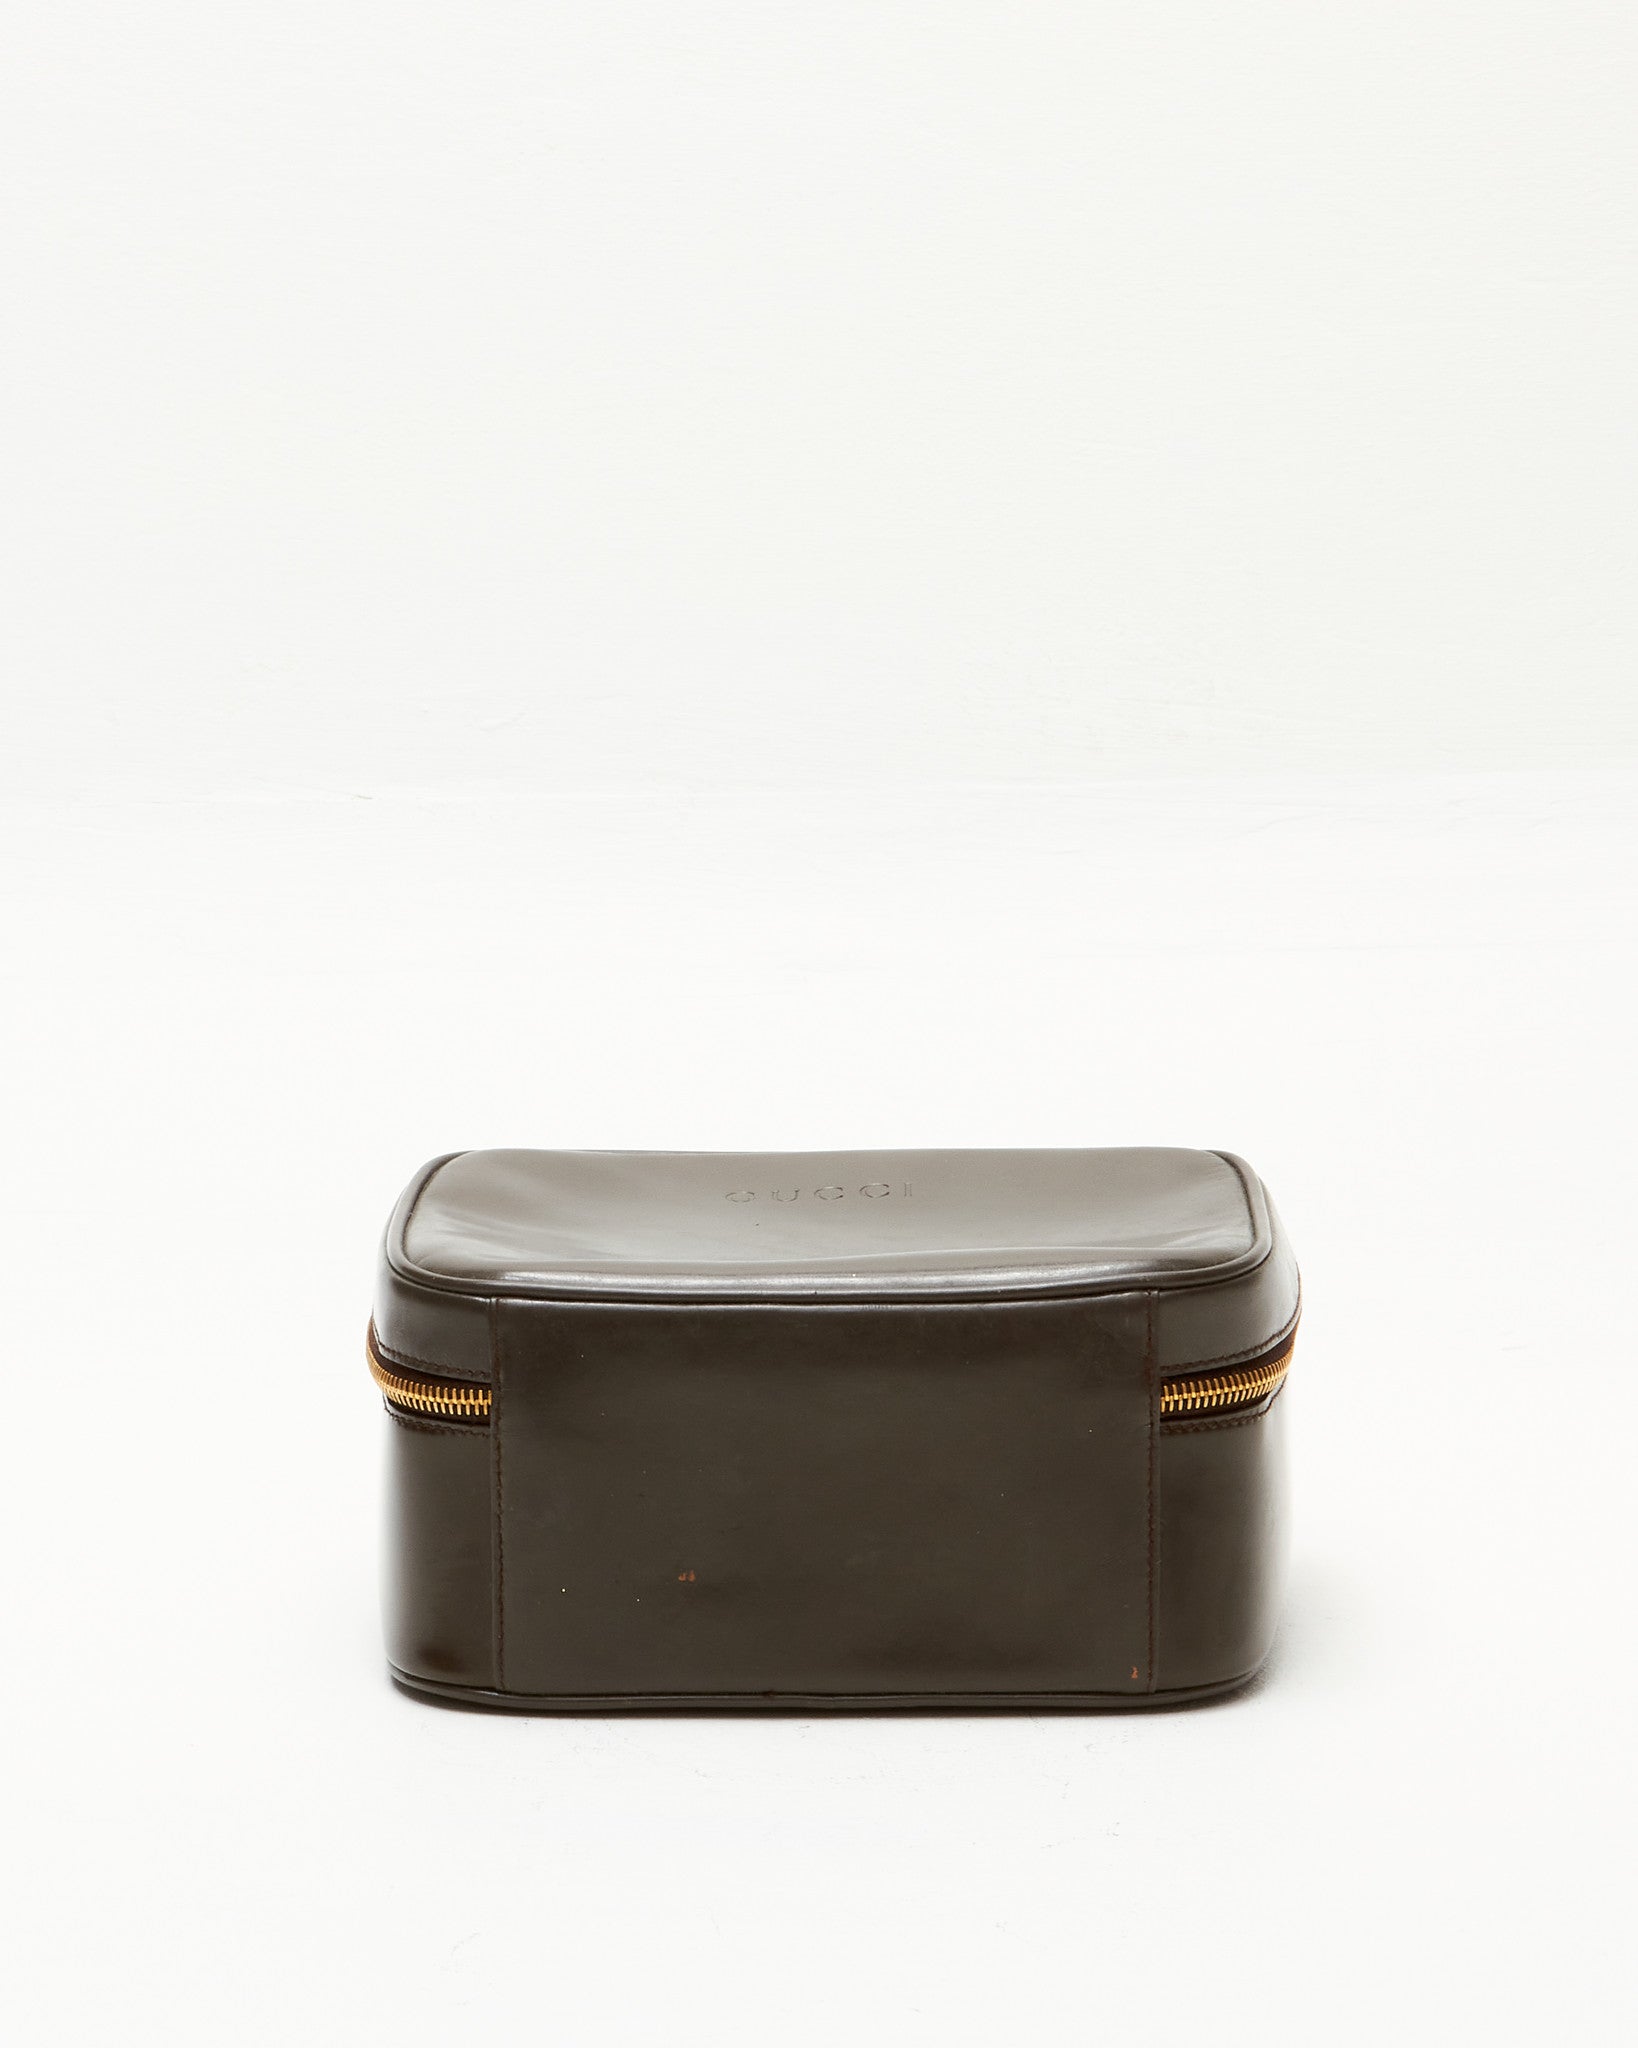 Gucci Vintage Brown Leather Vanity Top Handle Bag